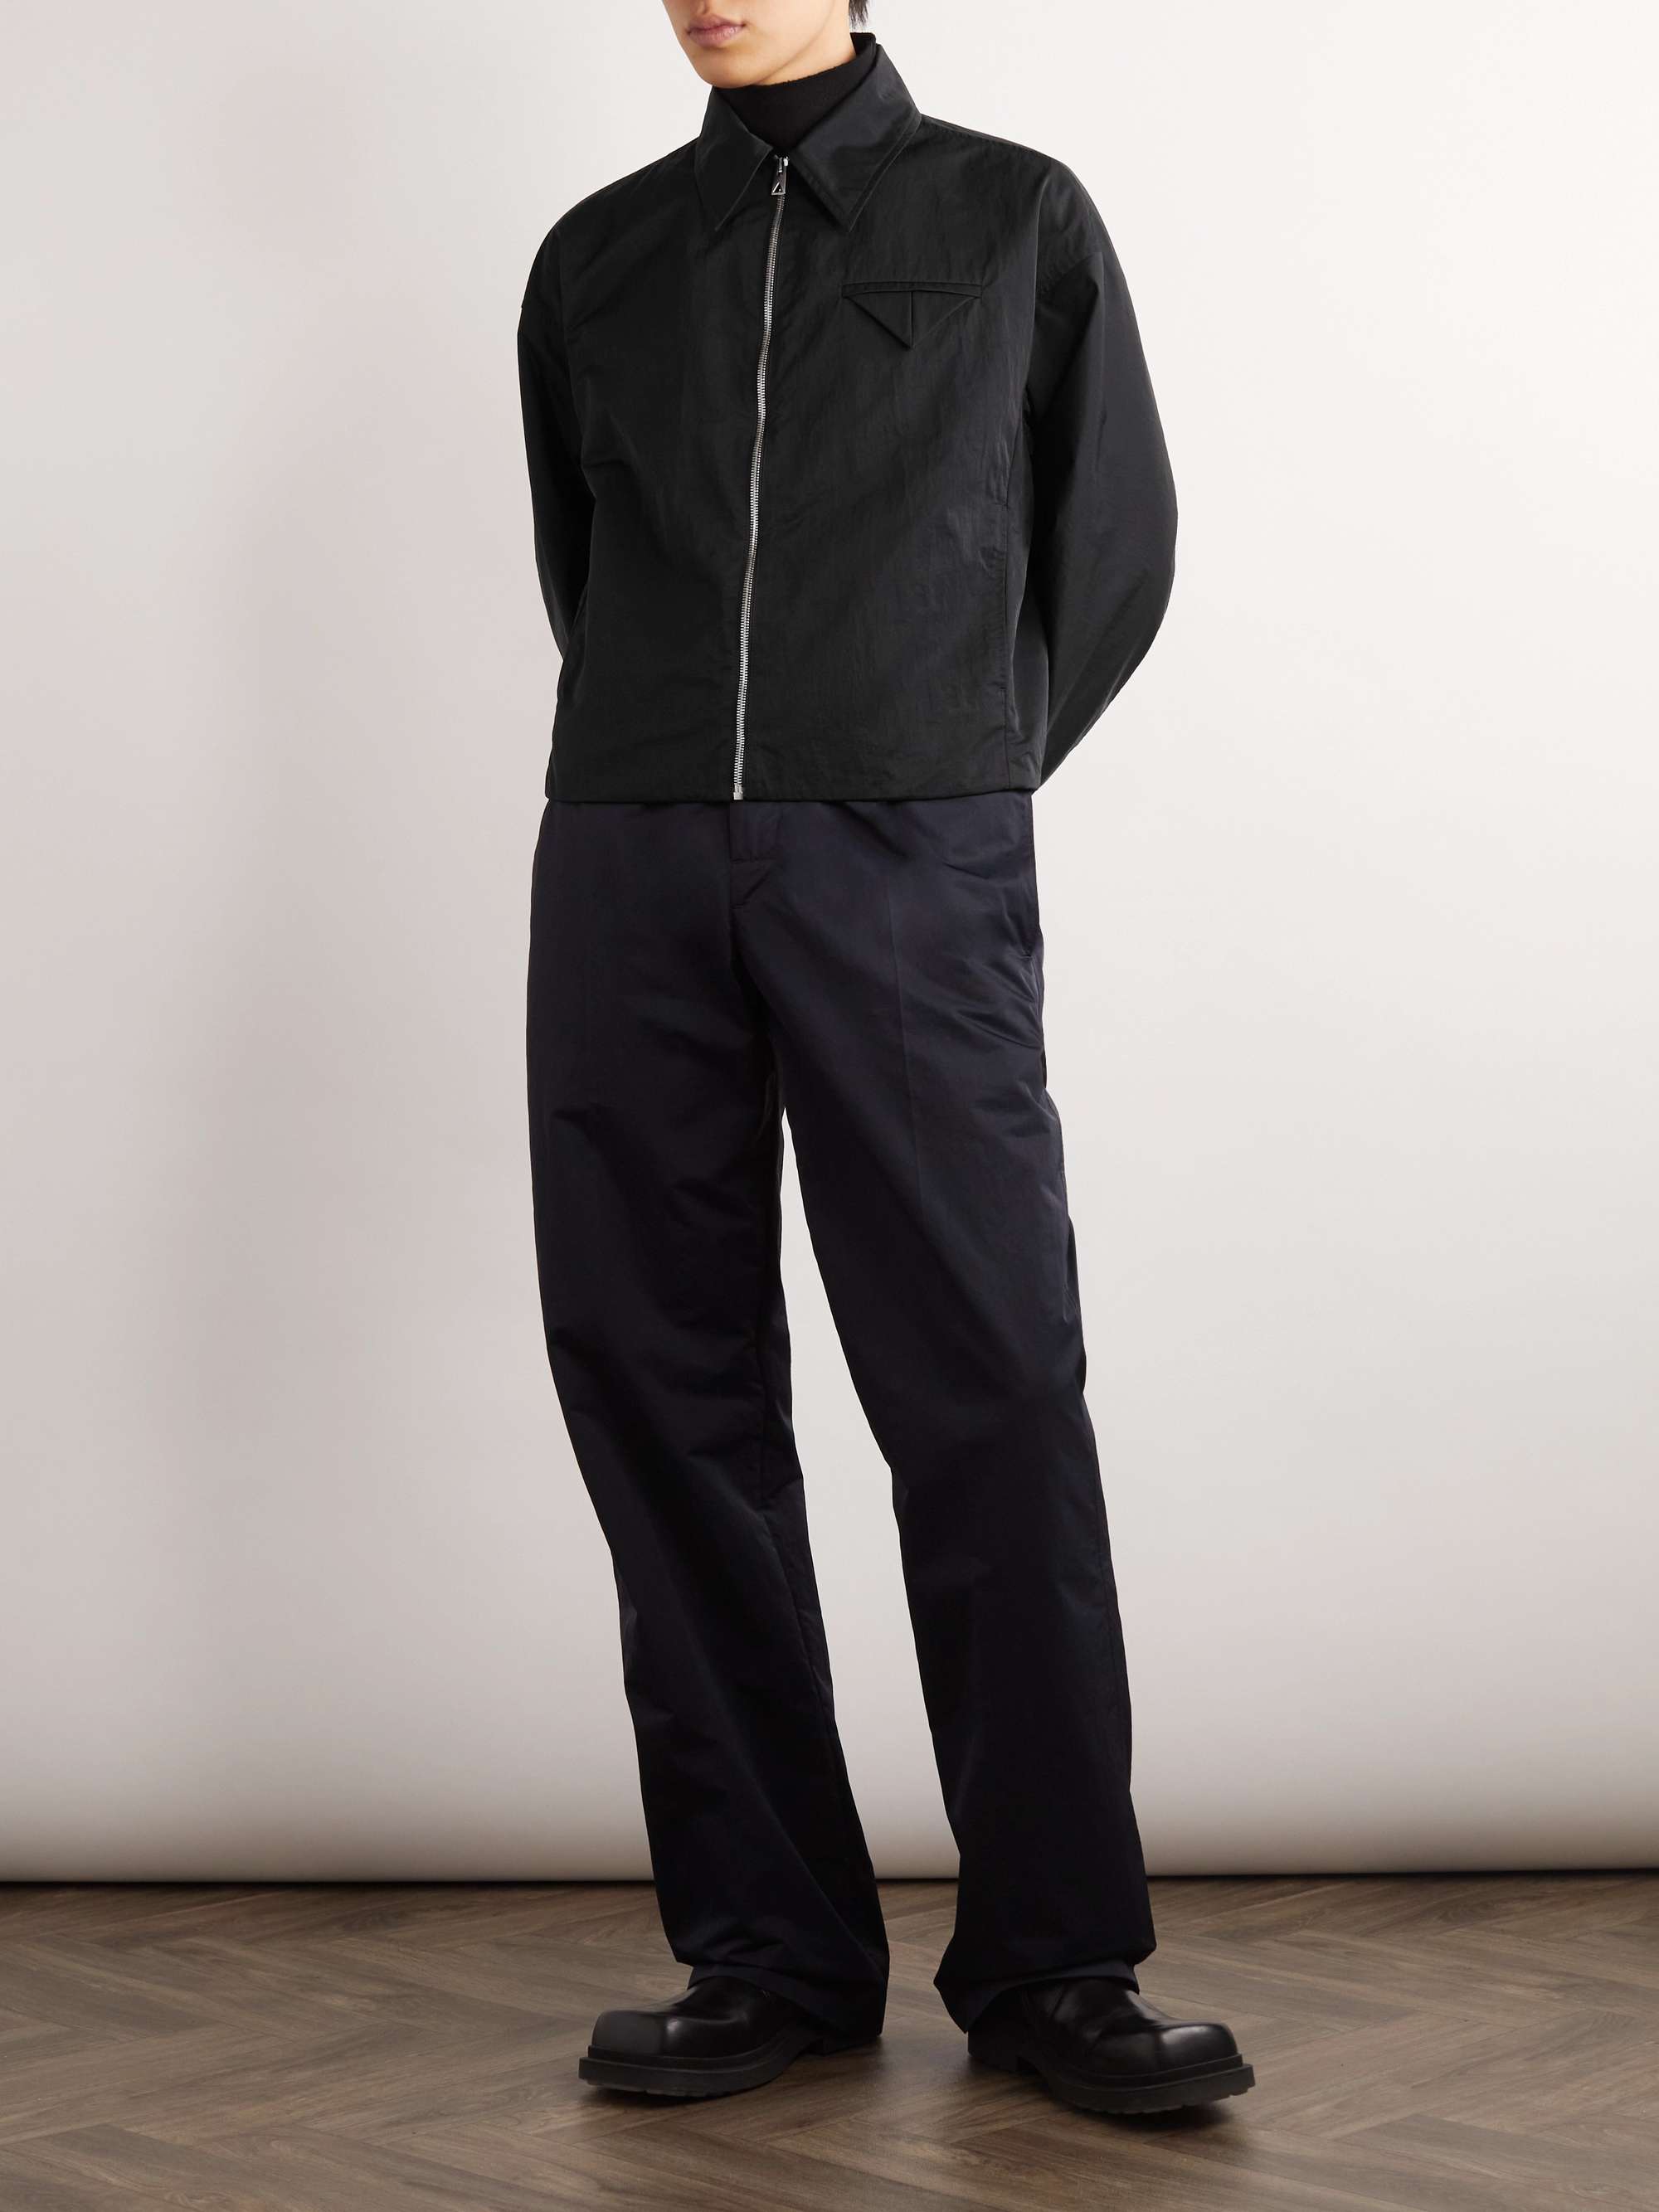 BOTTEGA VENETA Tech-Nylon Blouson Jacket for Men | MR PORTER